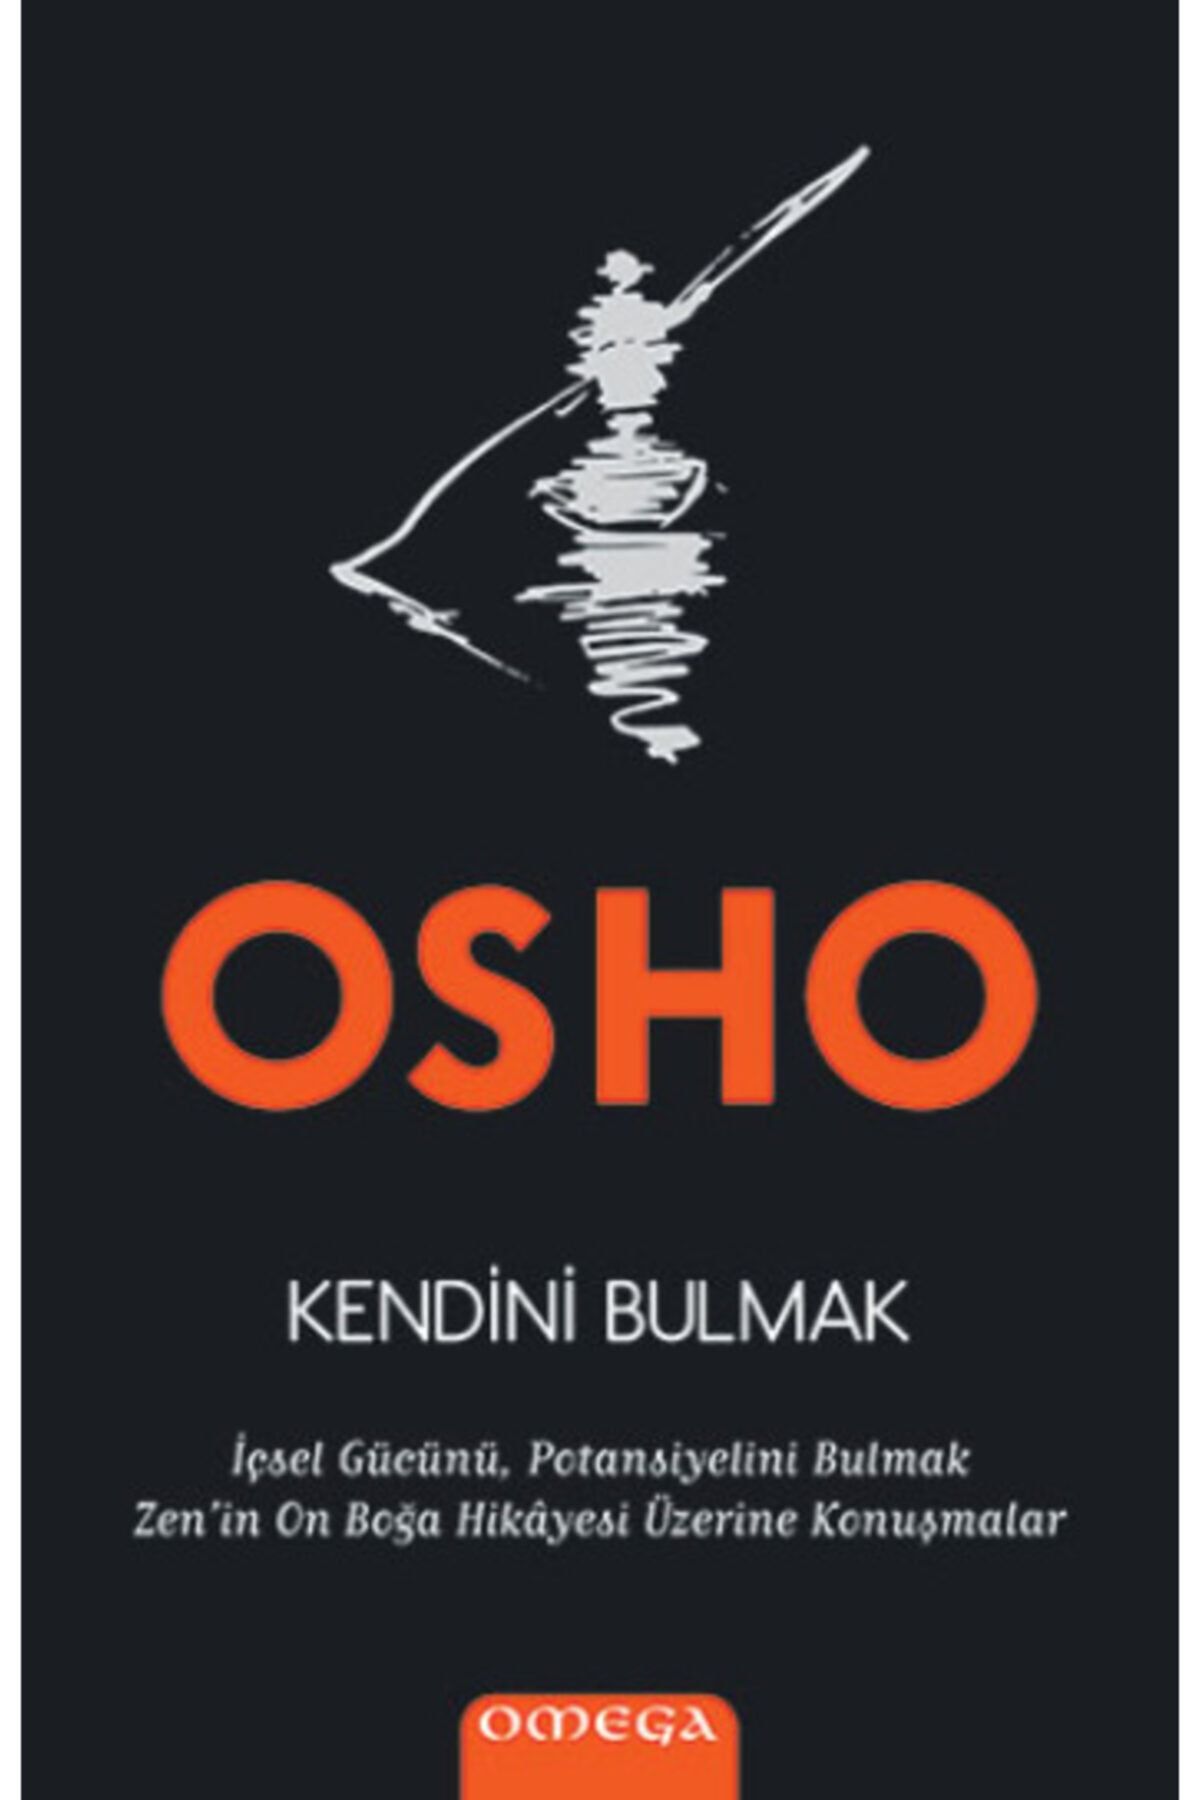 Omega Kendini Bulmak /osho / Yayınları